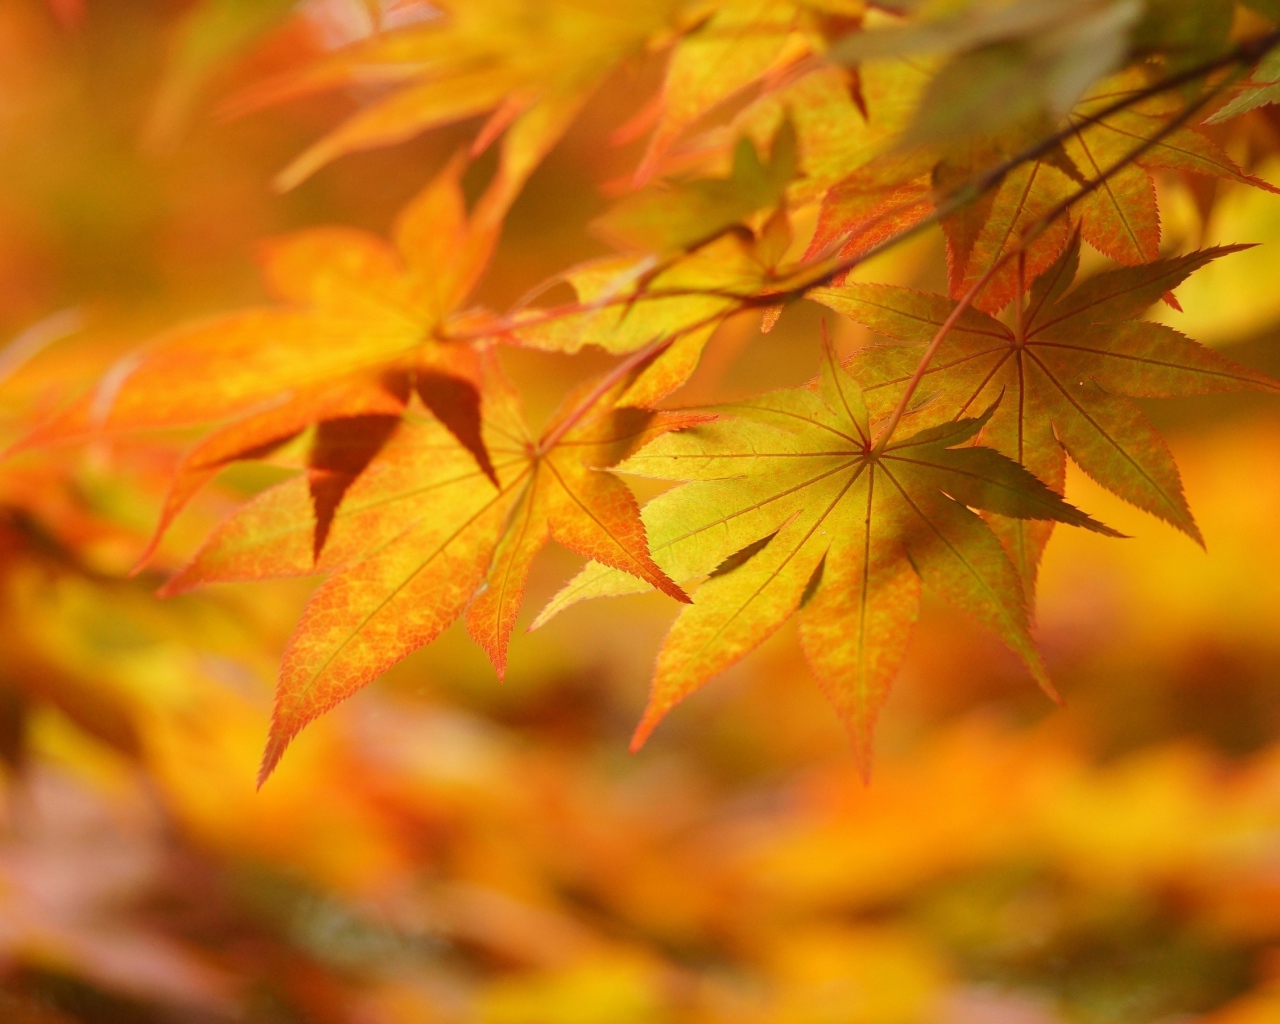 Ветка с осенними листьями